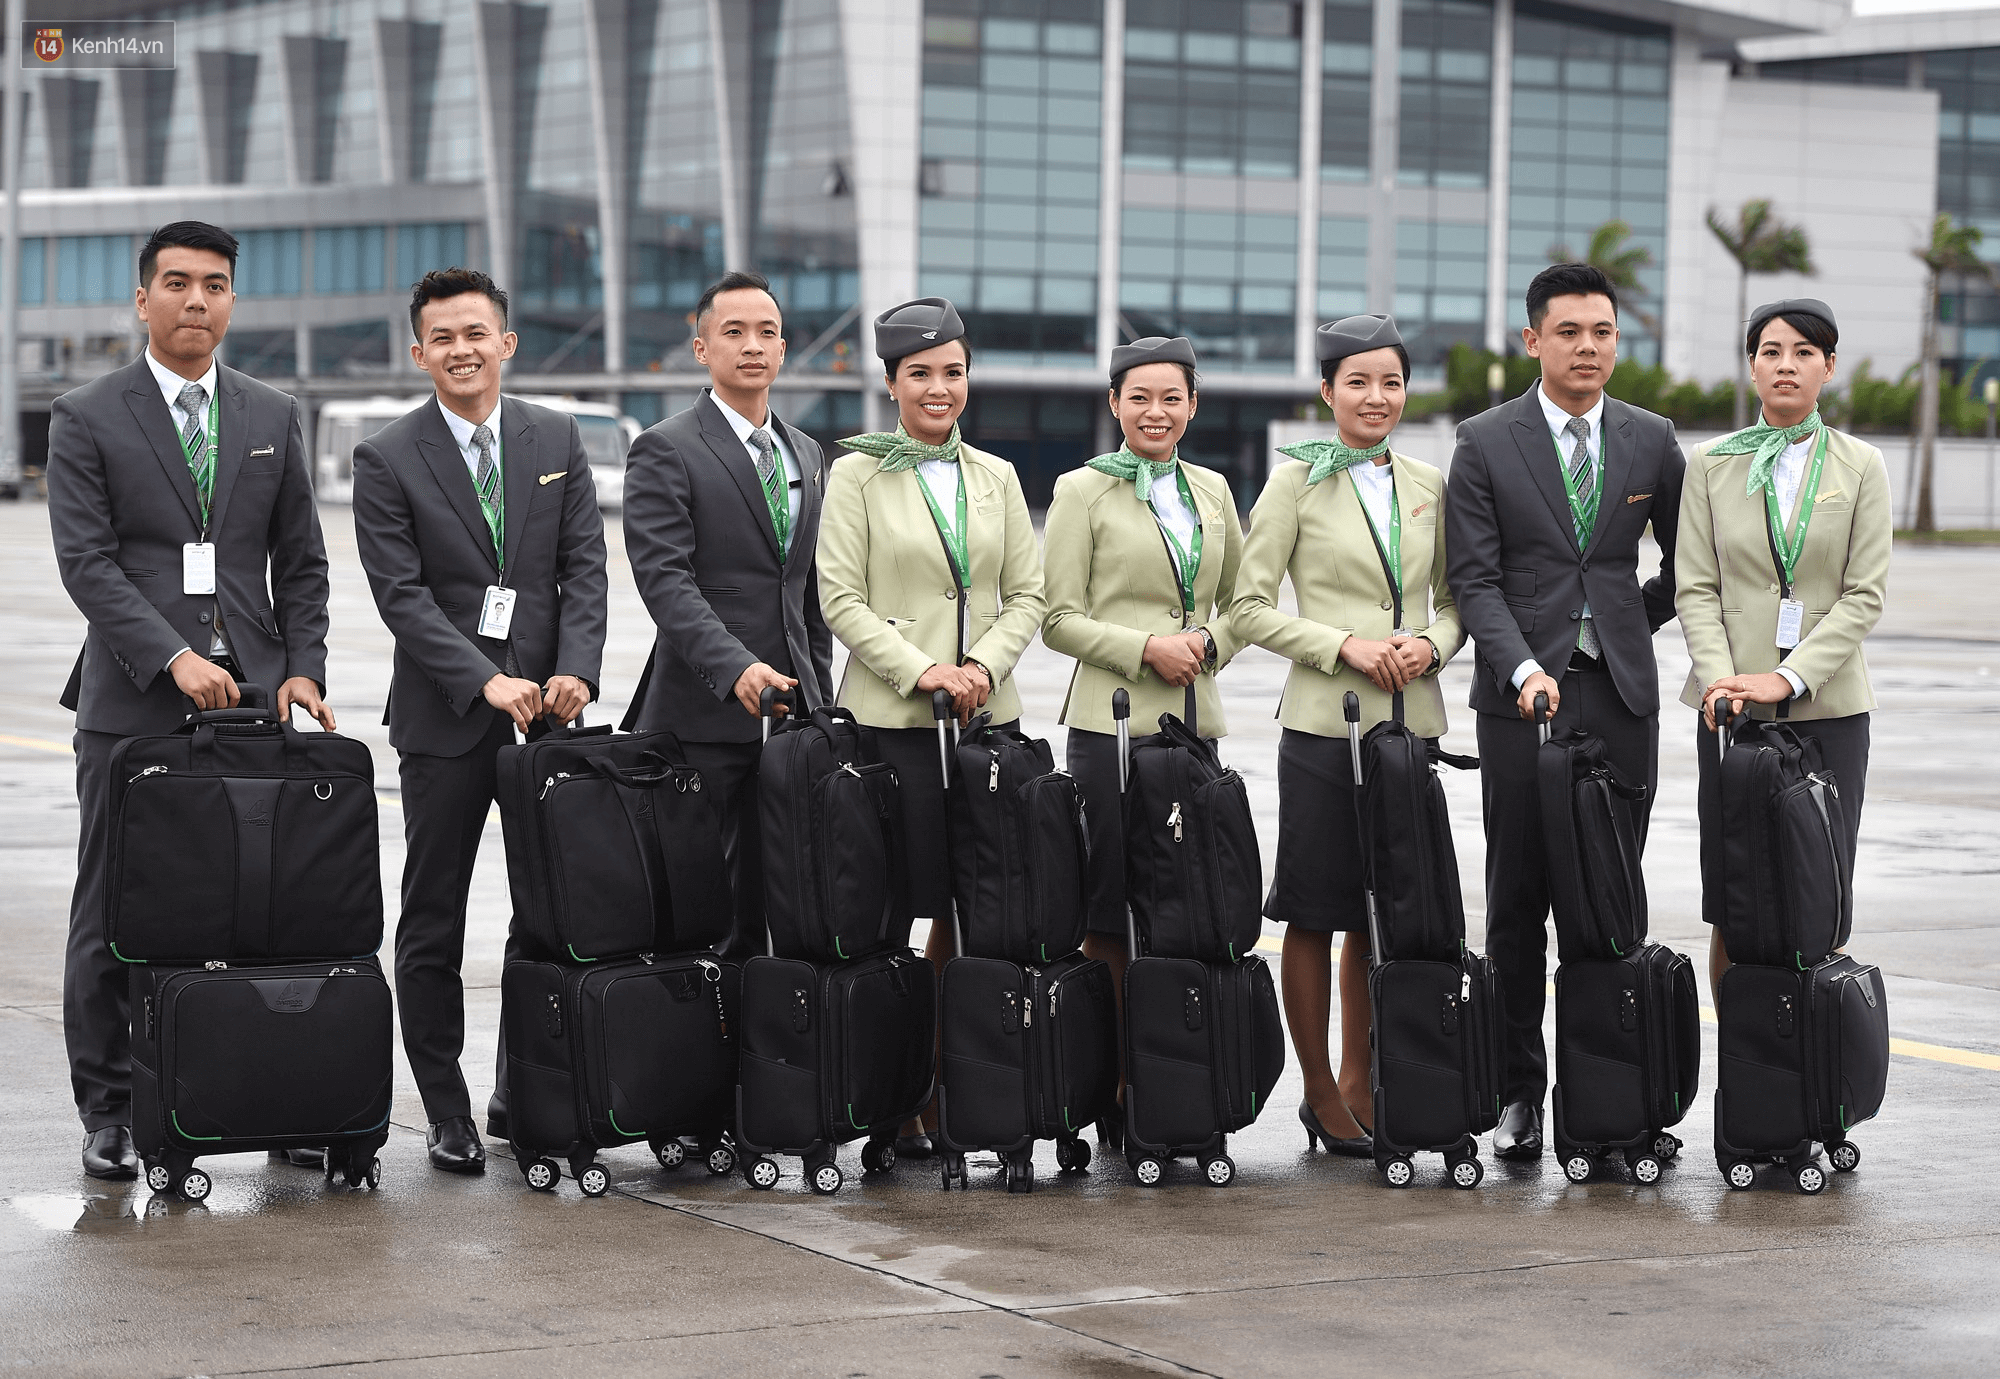 đồng phục tiếp viên hàng không bamboo airways